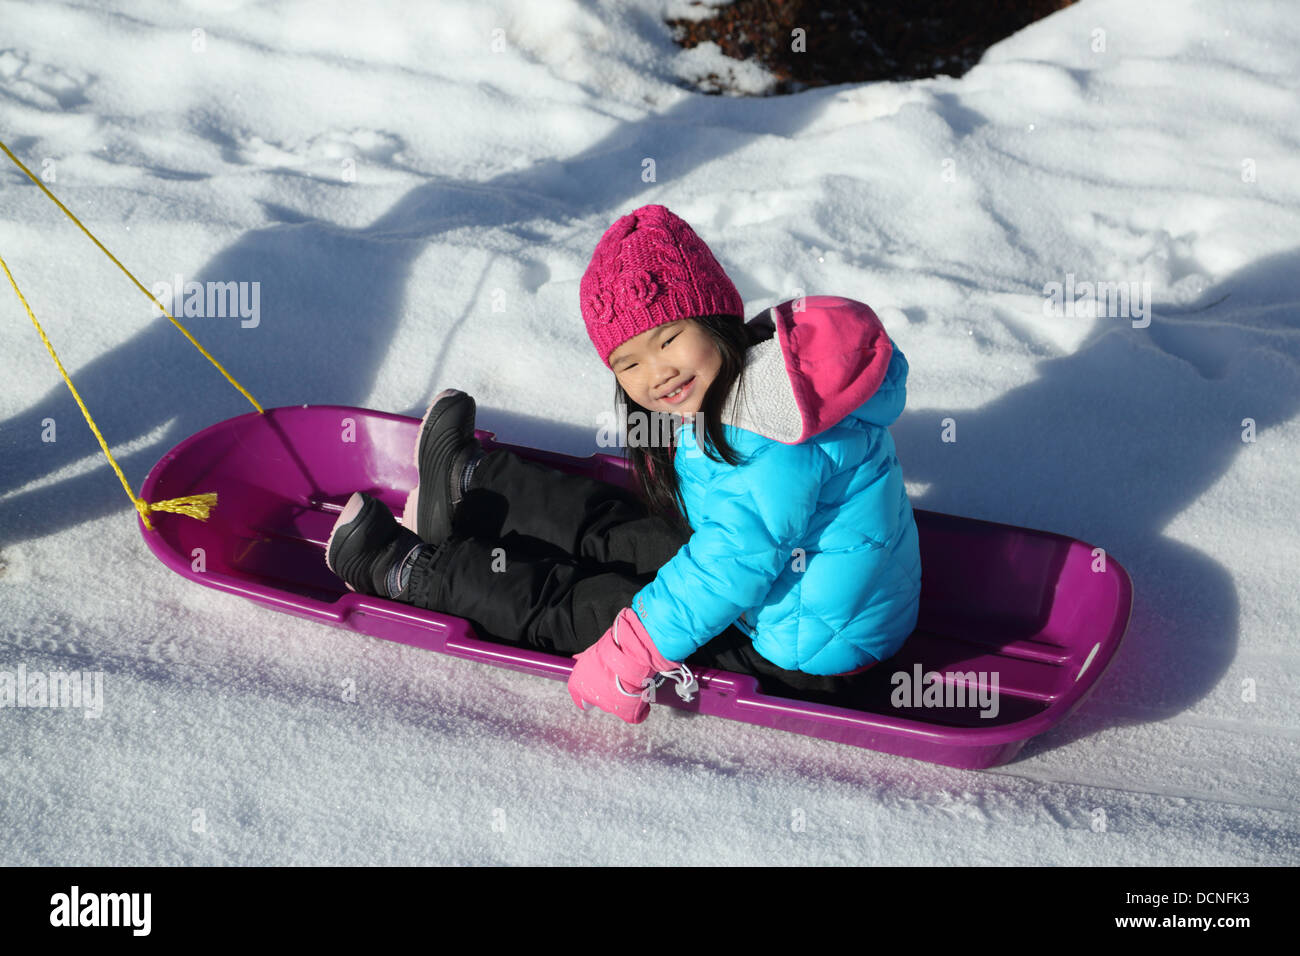 Jeune fille asiatique sur un traîneau dans la neige Banque D'Images